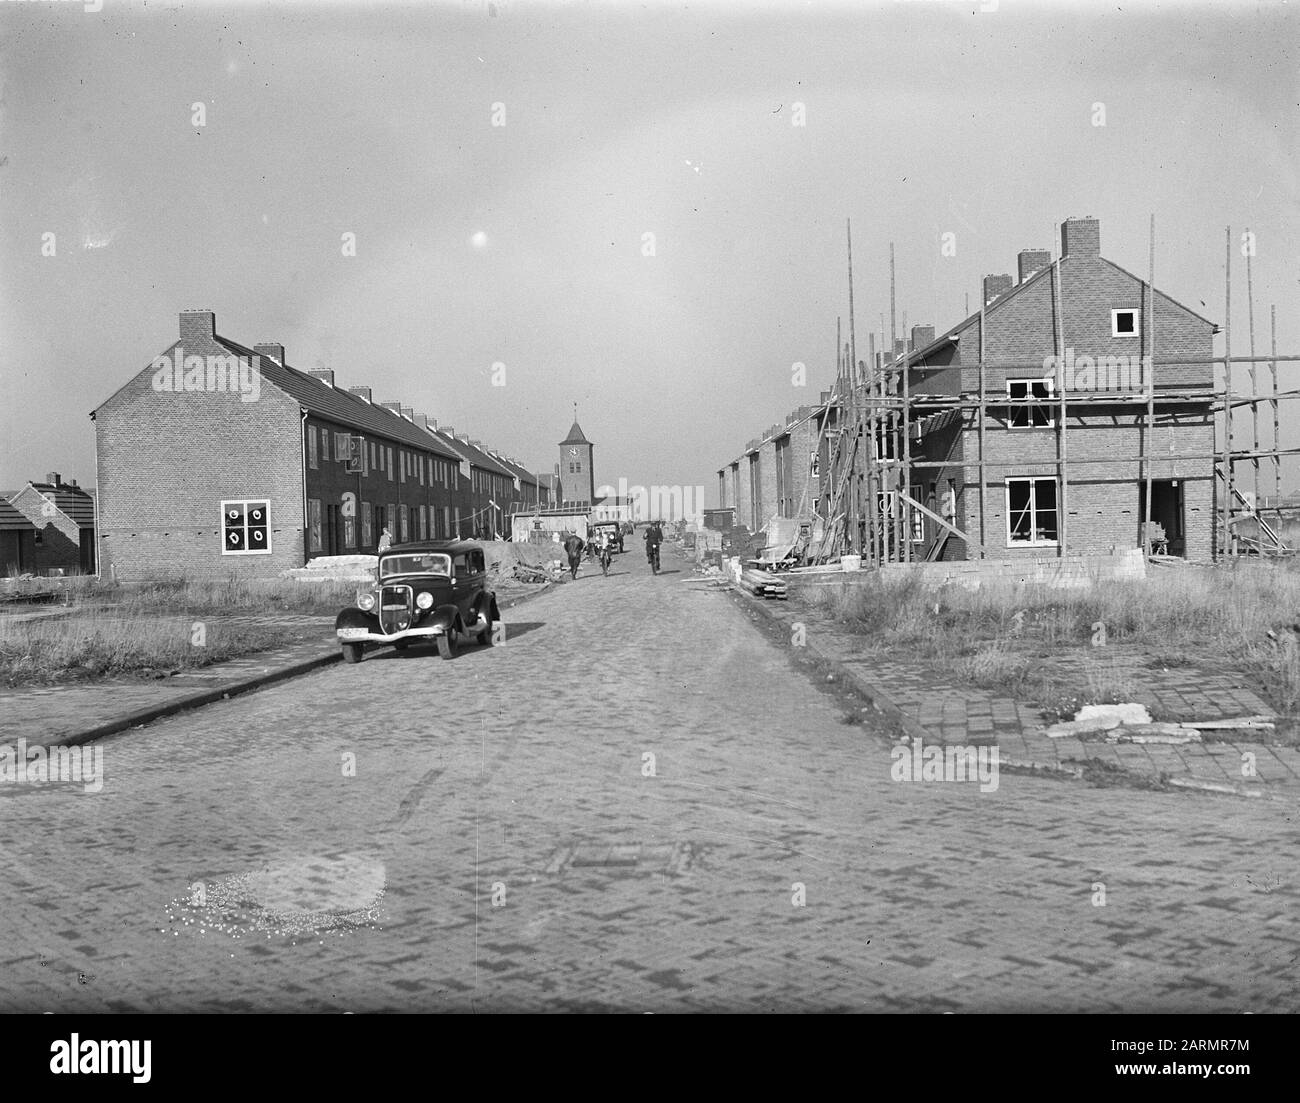 Sternstraat am Wieringerwerf. Datum: 19.November 1947 Ort: Noord-Holland, Wieringermeer, Wieringerwerf Schlagwörter: Bauaktivitäten, Wohnen Stockfoto